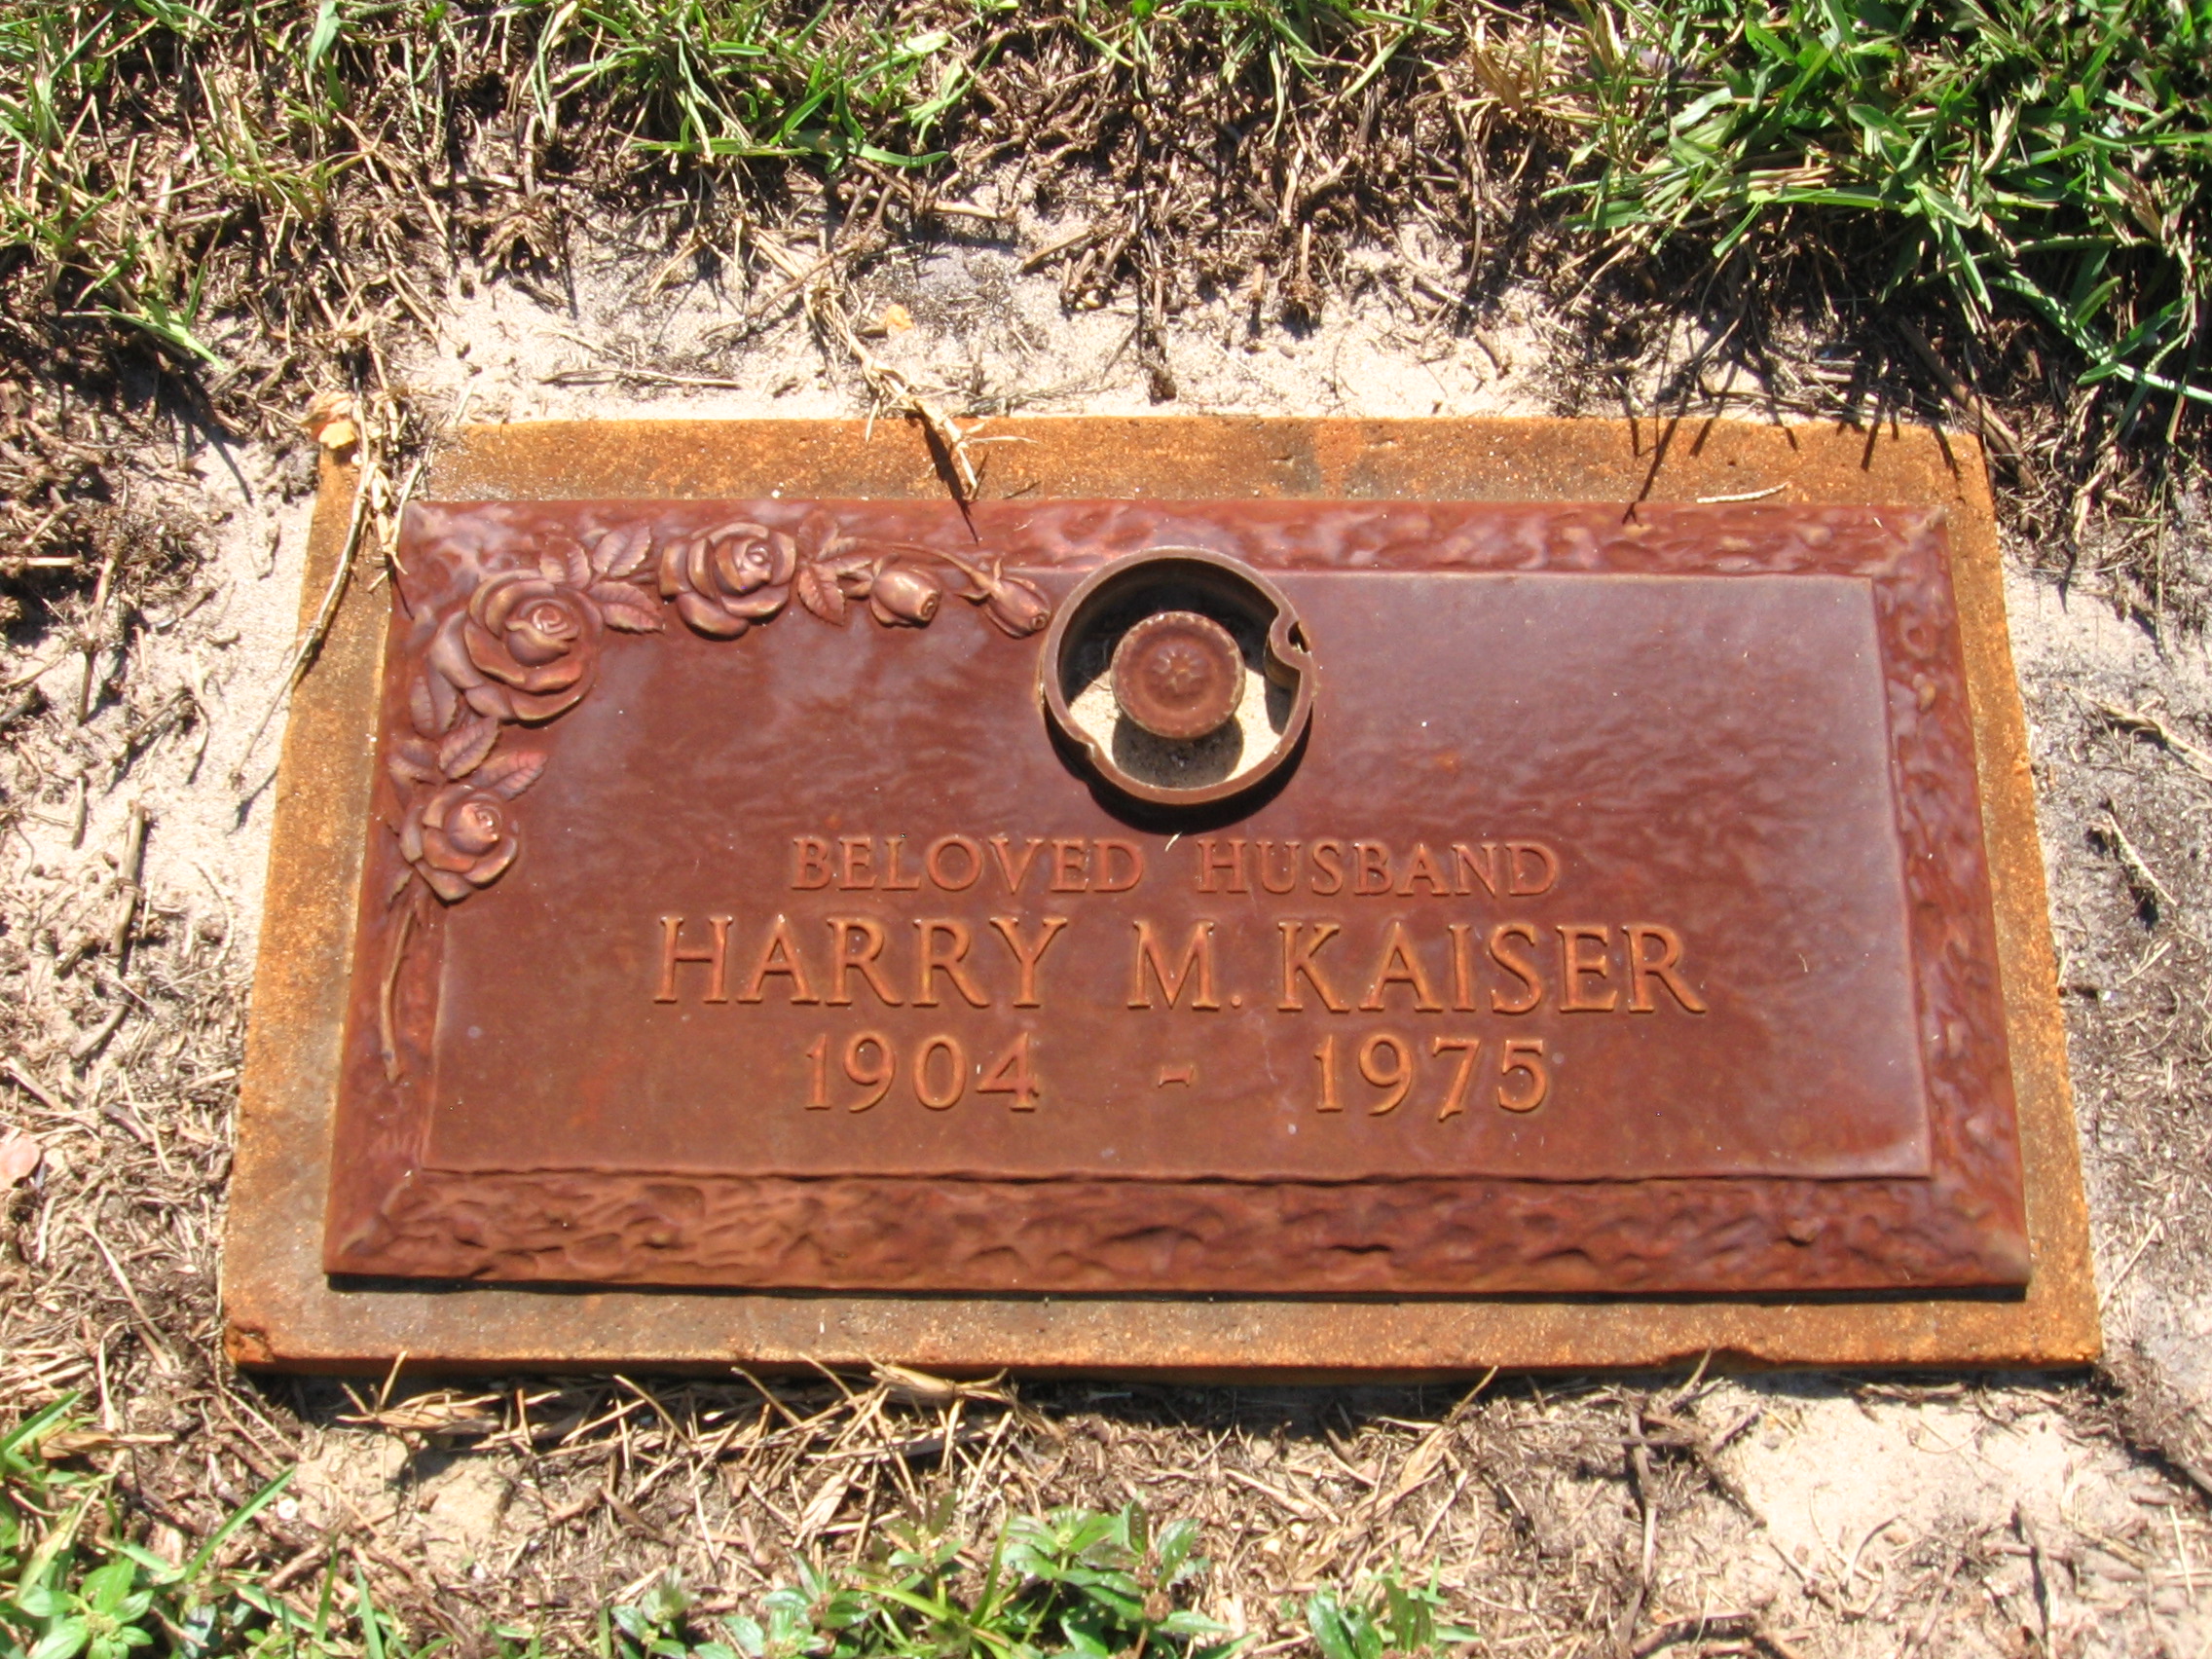 Harry M Kaiser